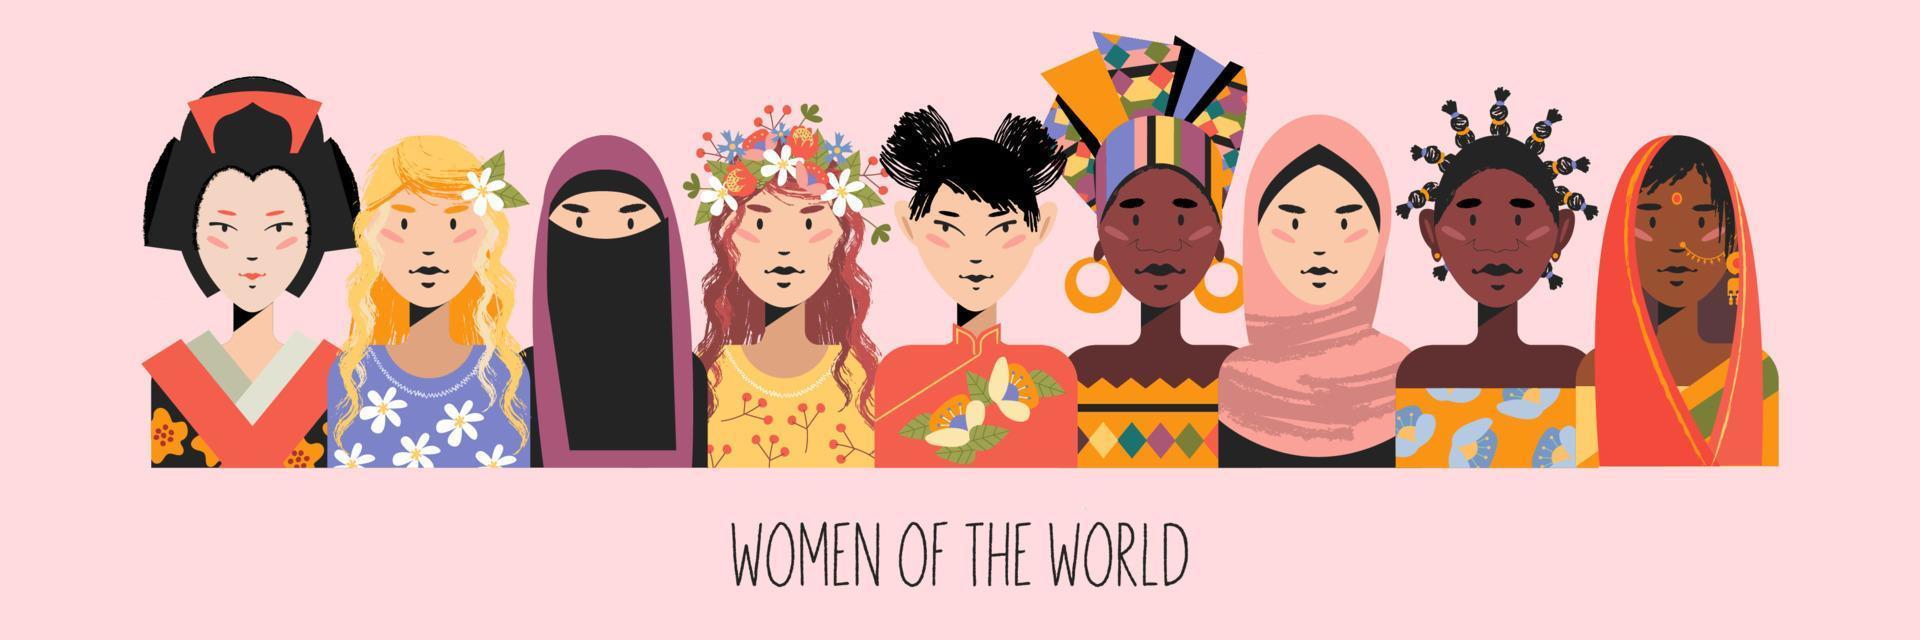 mujeres de todo el mundo. mujeres con trajes tradicionales. ilustración vectorial. vector